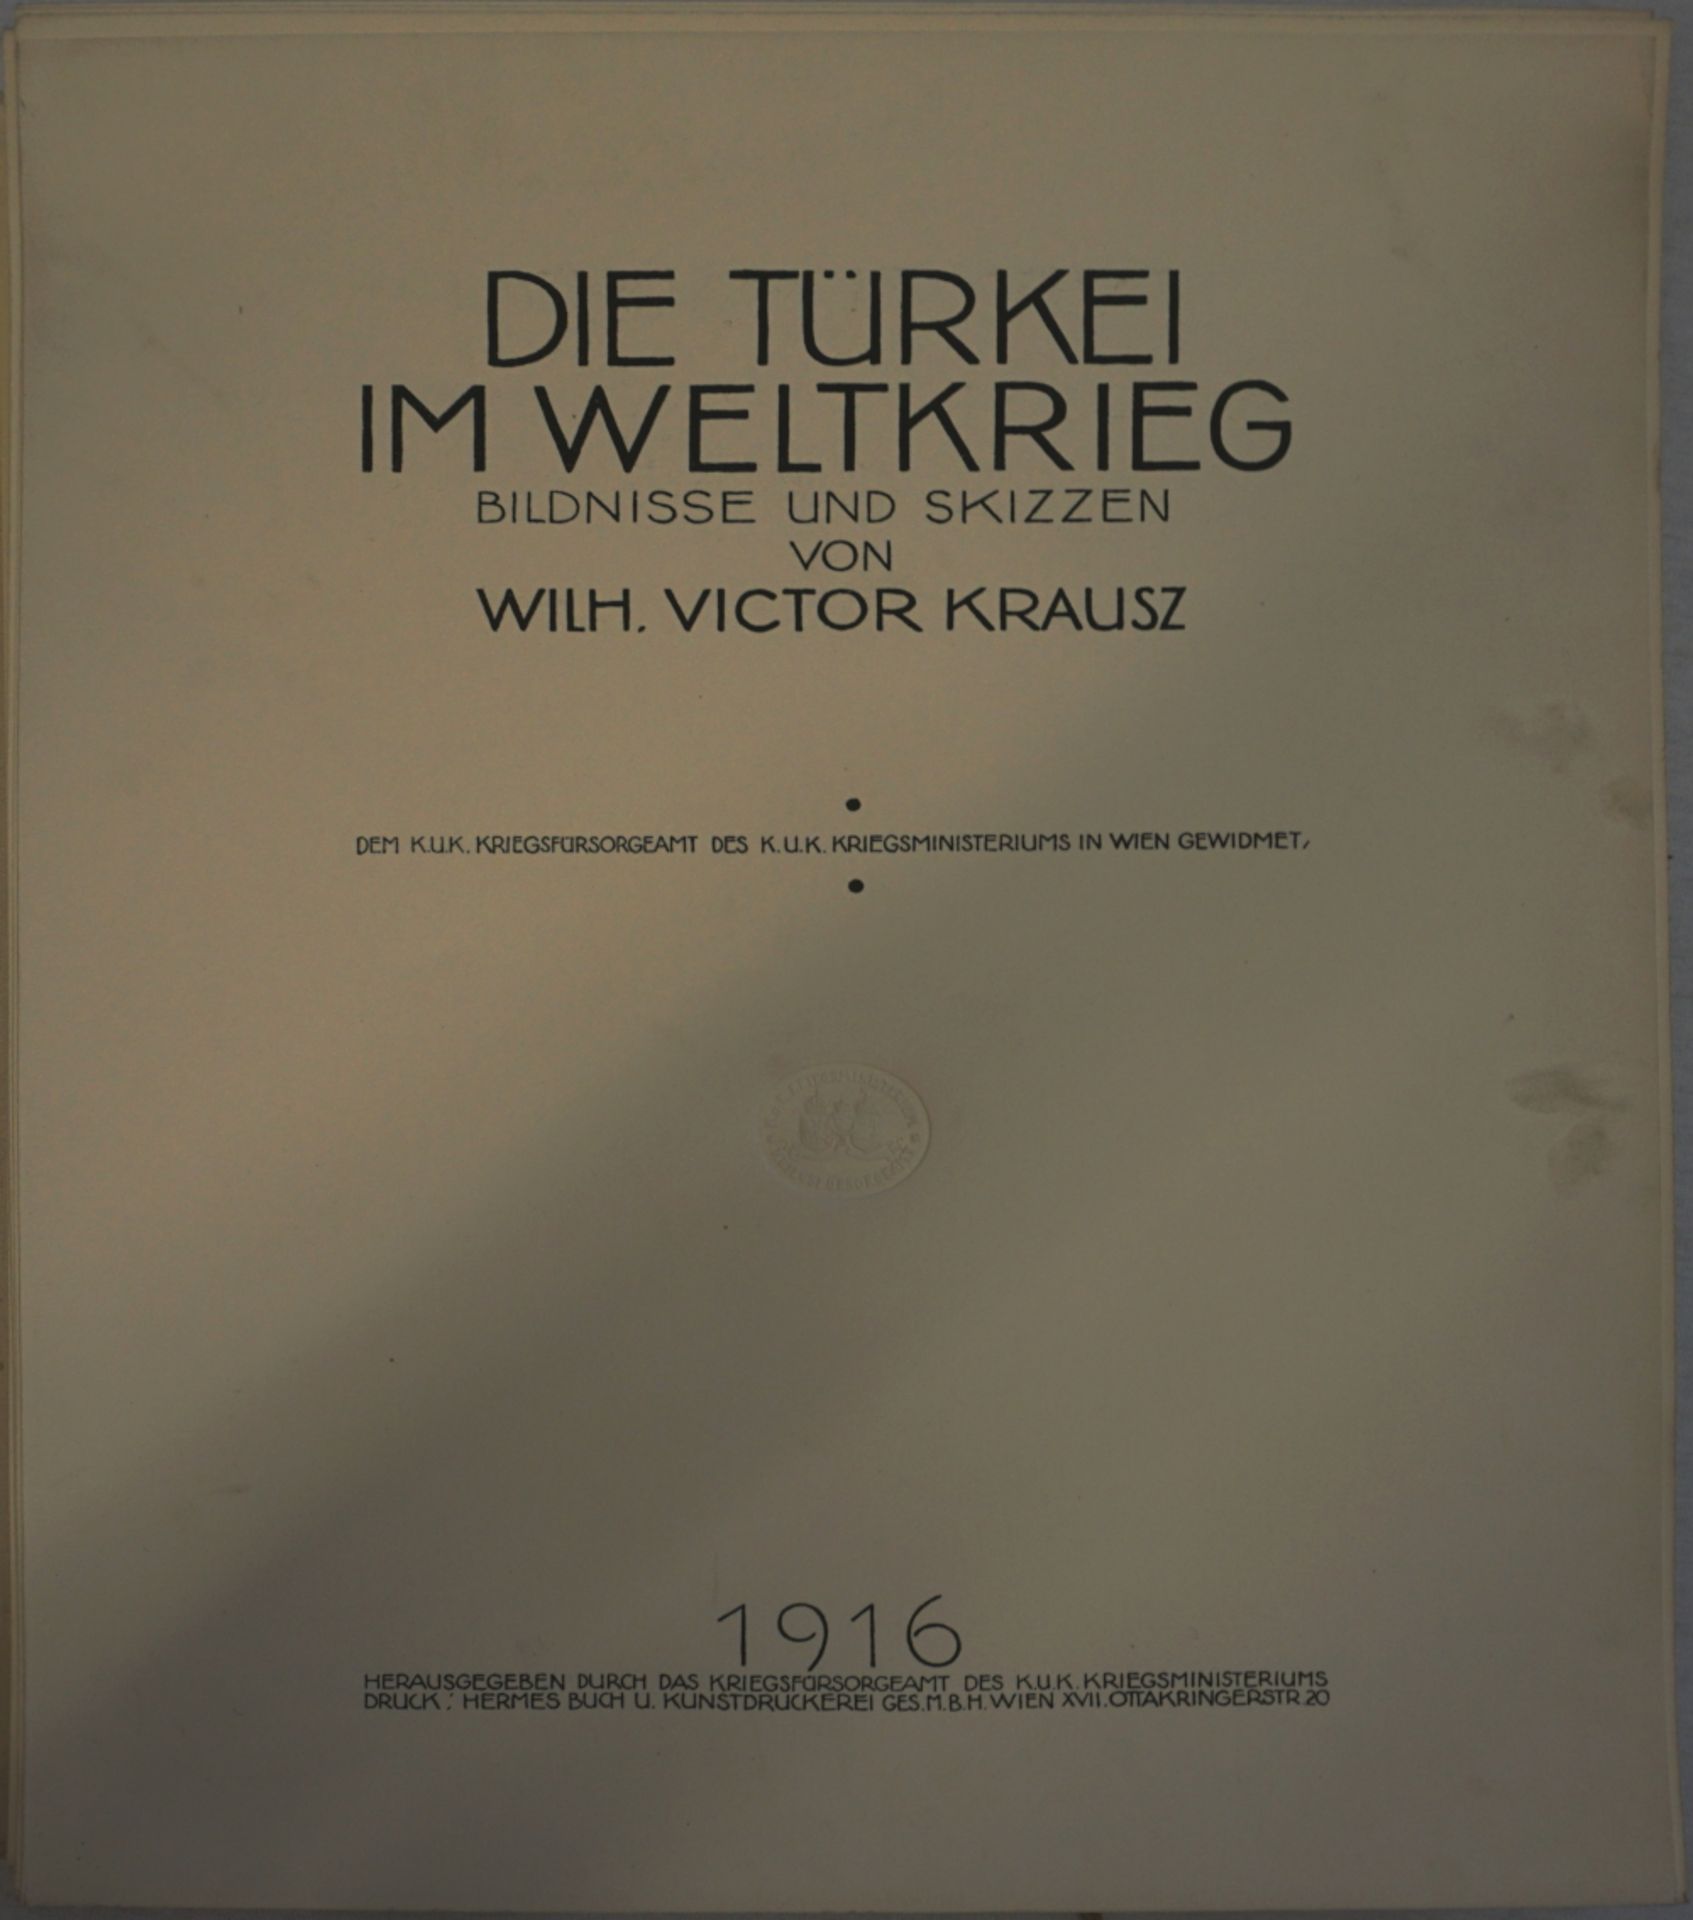 1 Mappenwerk "Die Türkei im Weltkrieg-Bildnisse und Skizzen von Wilh. Victor KRAUSZ" Wien 1916, - Image 3 of 9